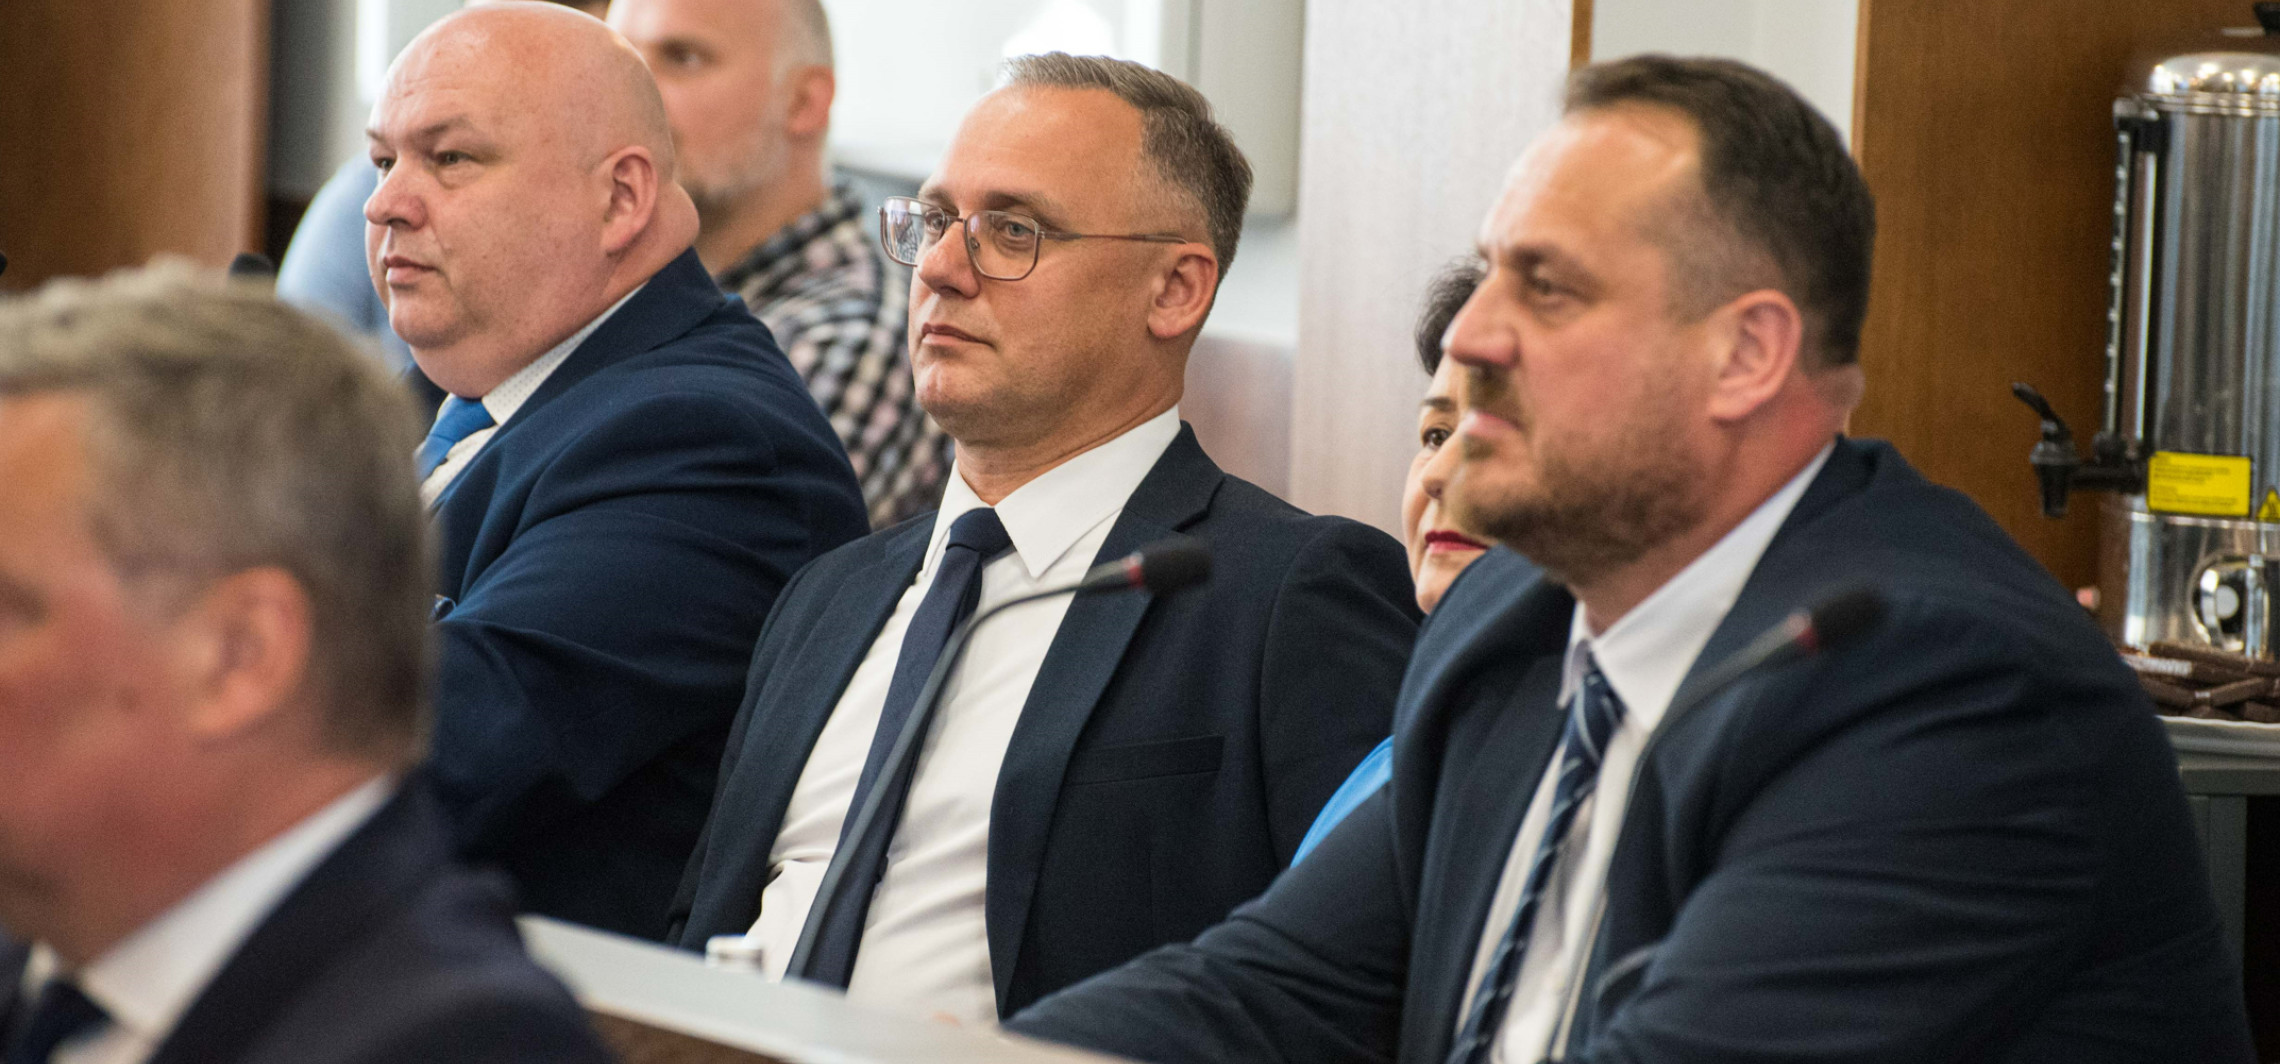 Inowrocław - Powiatowi radni PiS komentują ostatnie wydarzenia